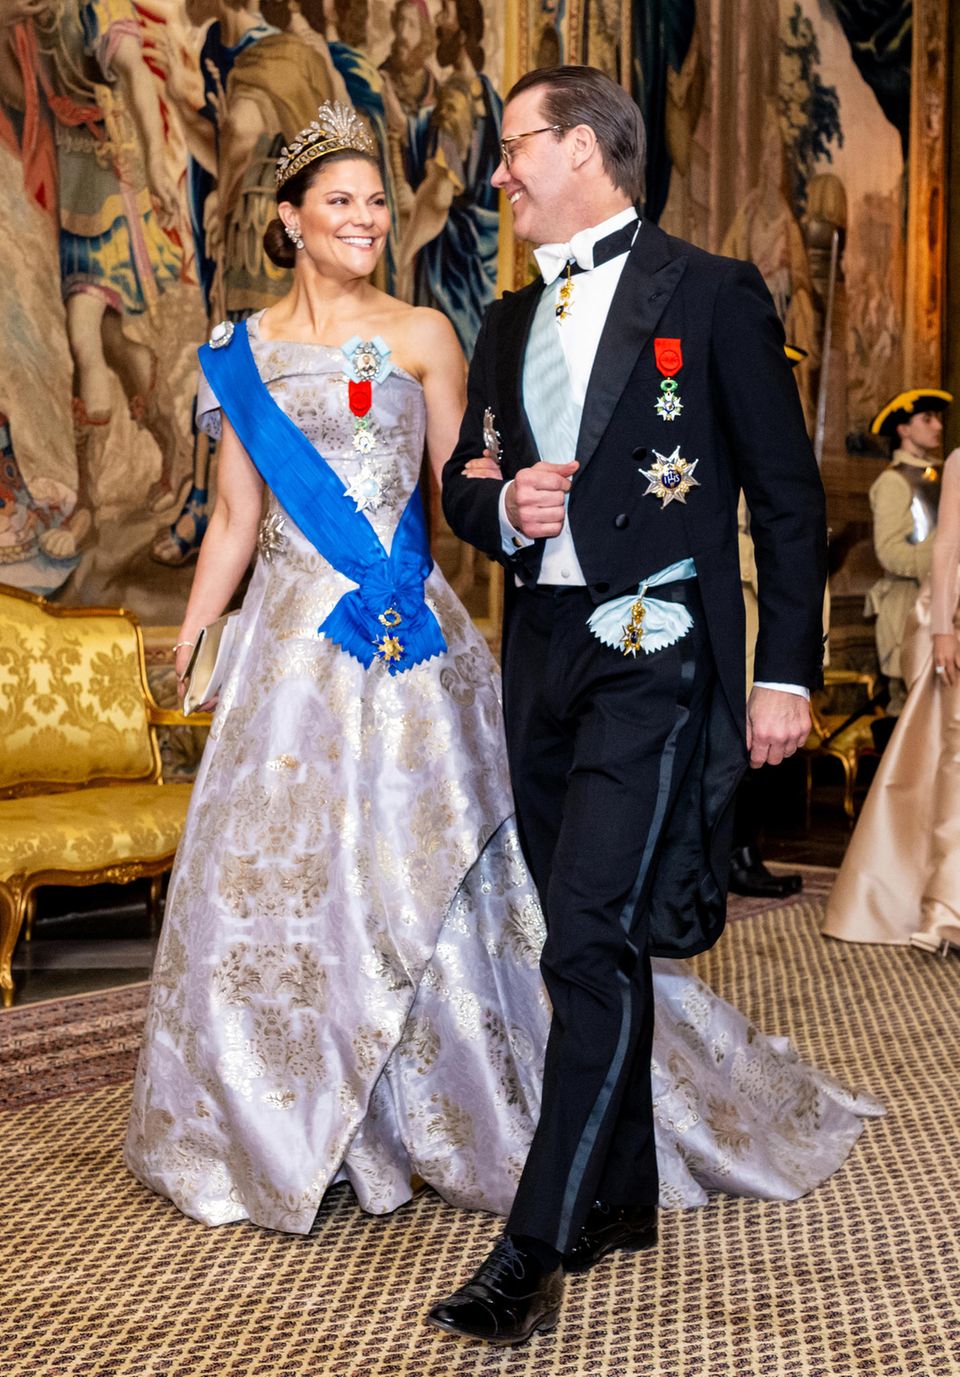 In schönster Laune schreiten auch Victoria und Daniel Richtung Festsaal. Die Kronprinzessin glänzt hierbei in einem silbergoldenen One-Shoulder-Look von H&M mit blauer Schärpe, ihr Prinz trägt ganz klassisch einen festlichen Frack.